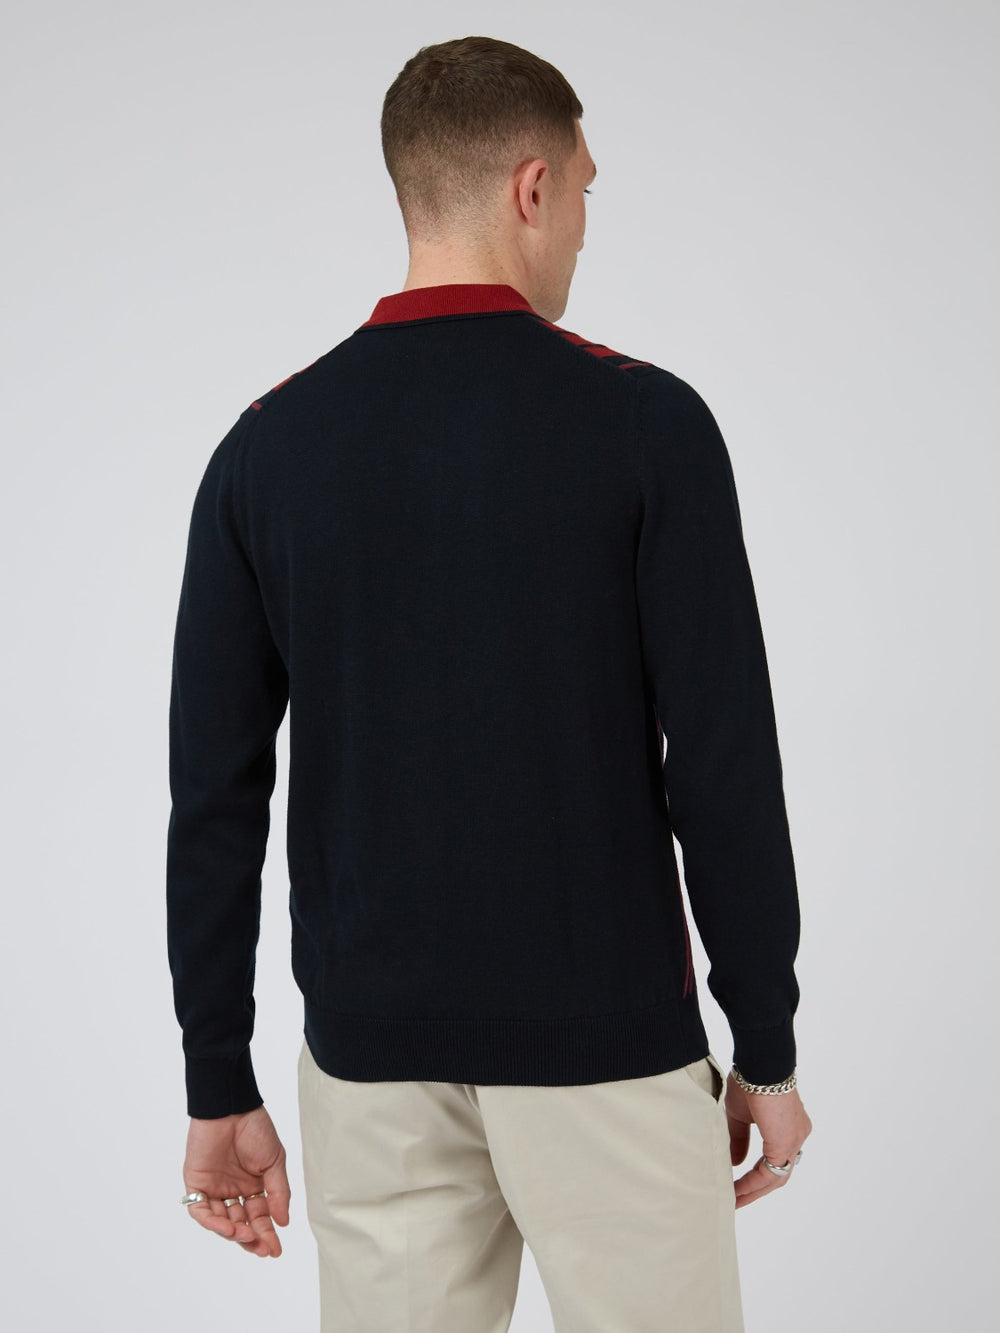 Ben Sherman, Long-Sleeve Knit Polo, Men's Sweater Polo, Red, Black Polo, Collared Sweater Polo,back